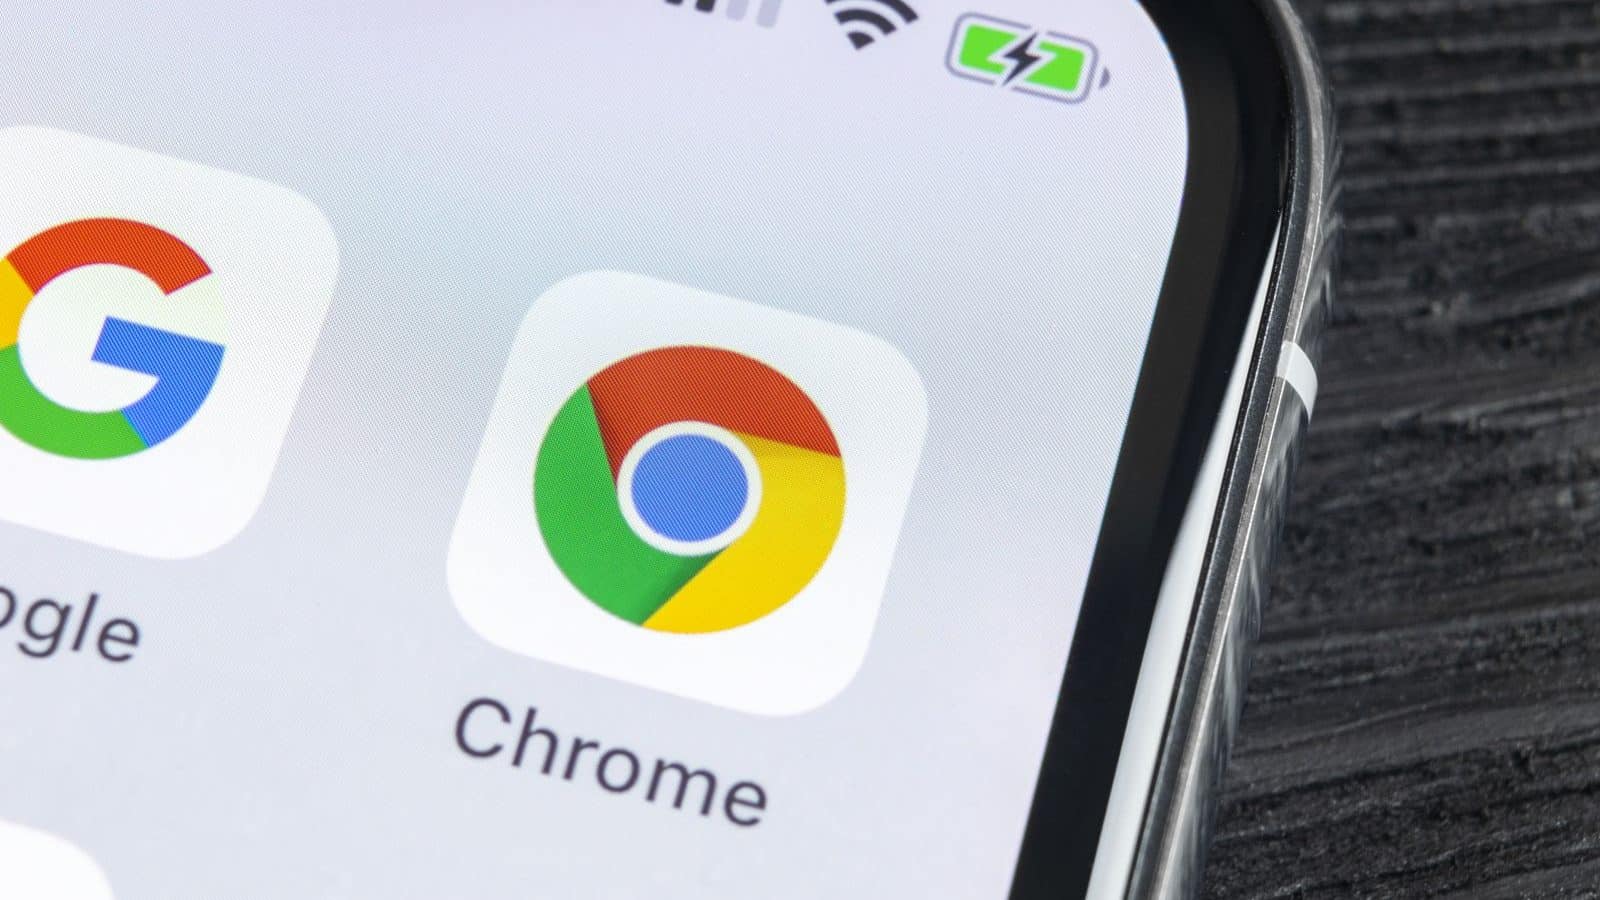  Google Chrome: a legerősebb és legsokoldalúbb böngésző - Ismerje meg 4 fő előnyét